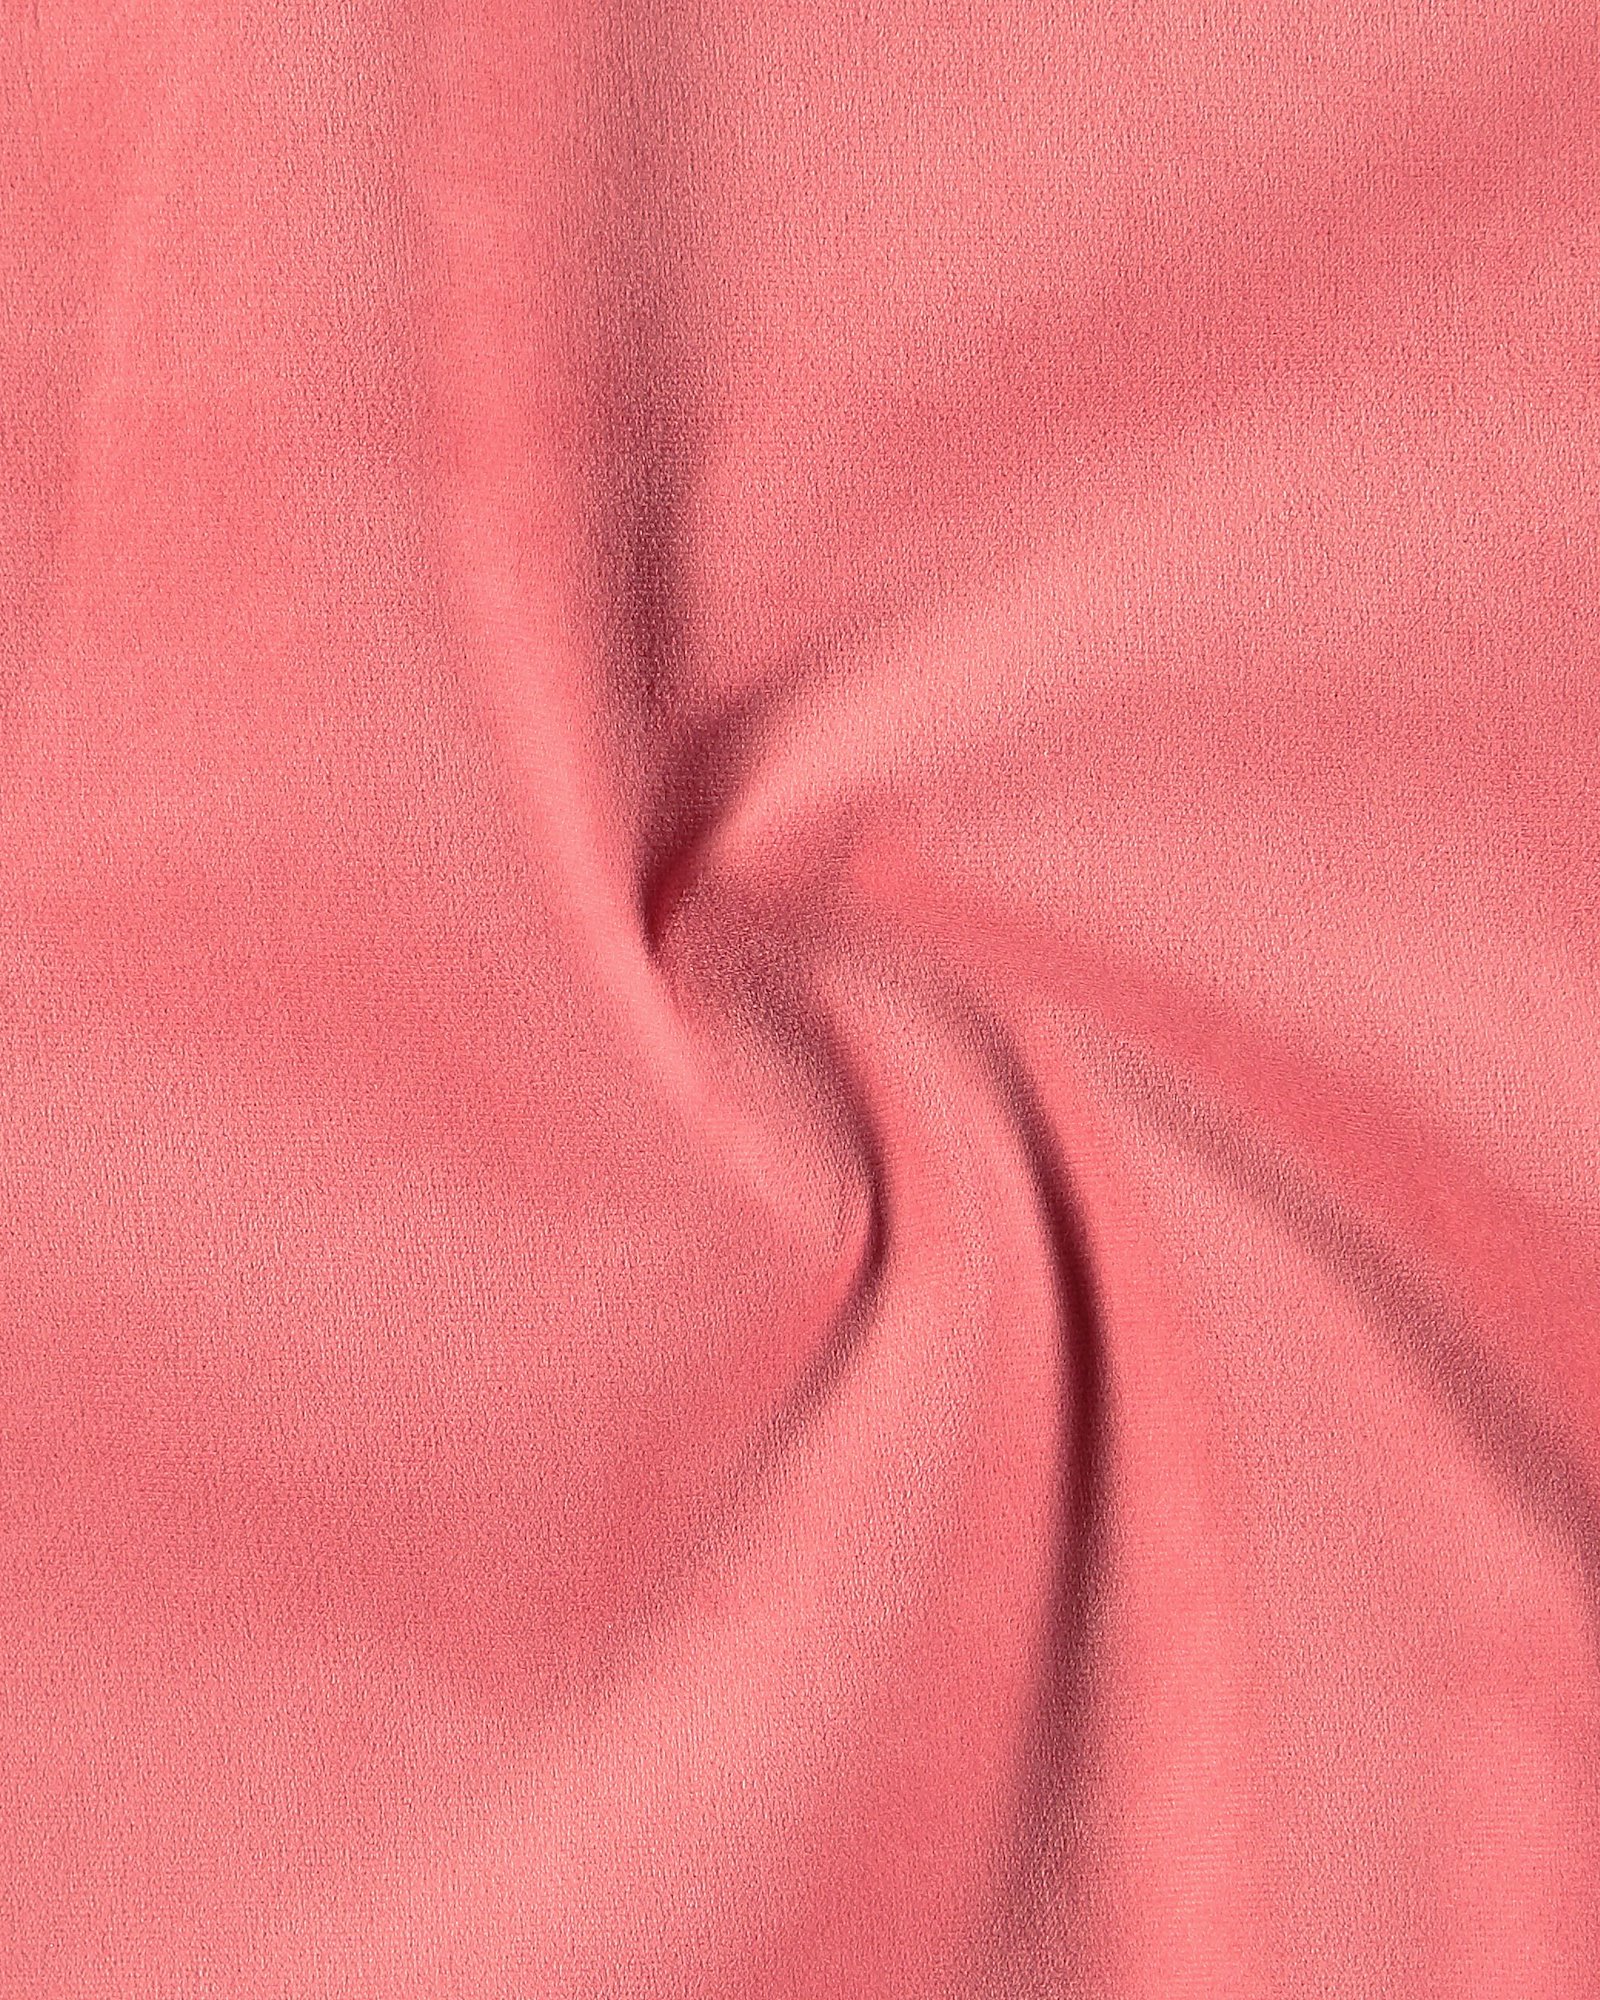 Upholstery velvet dark dusty pink 826258_pack